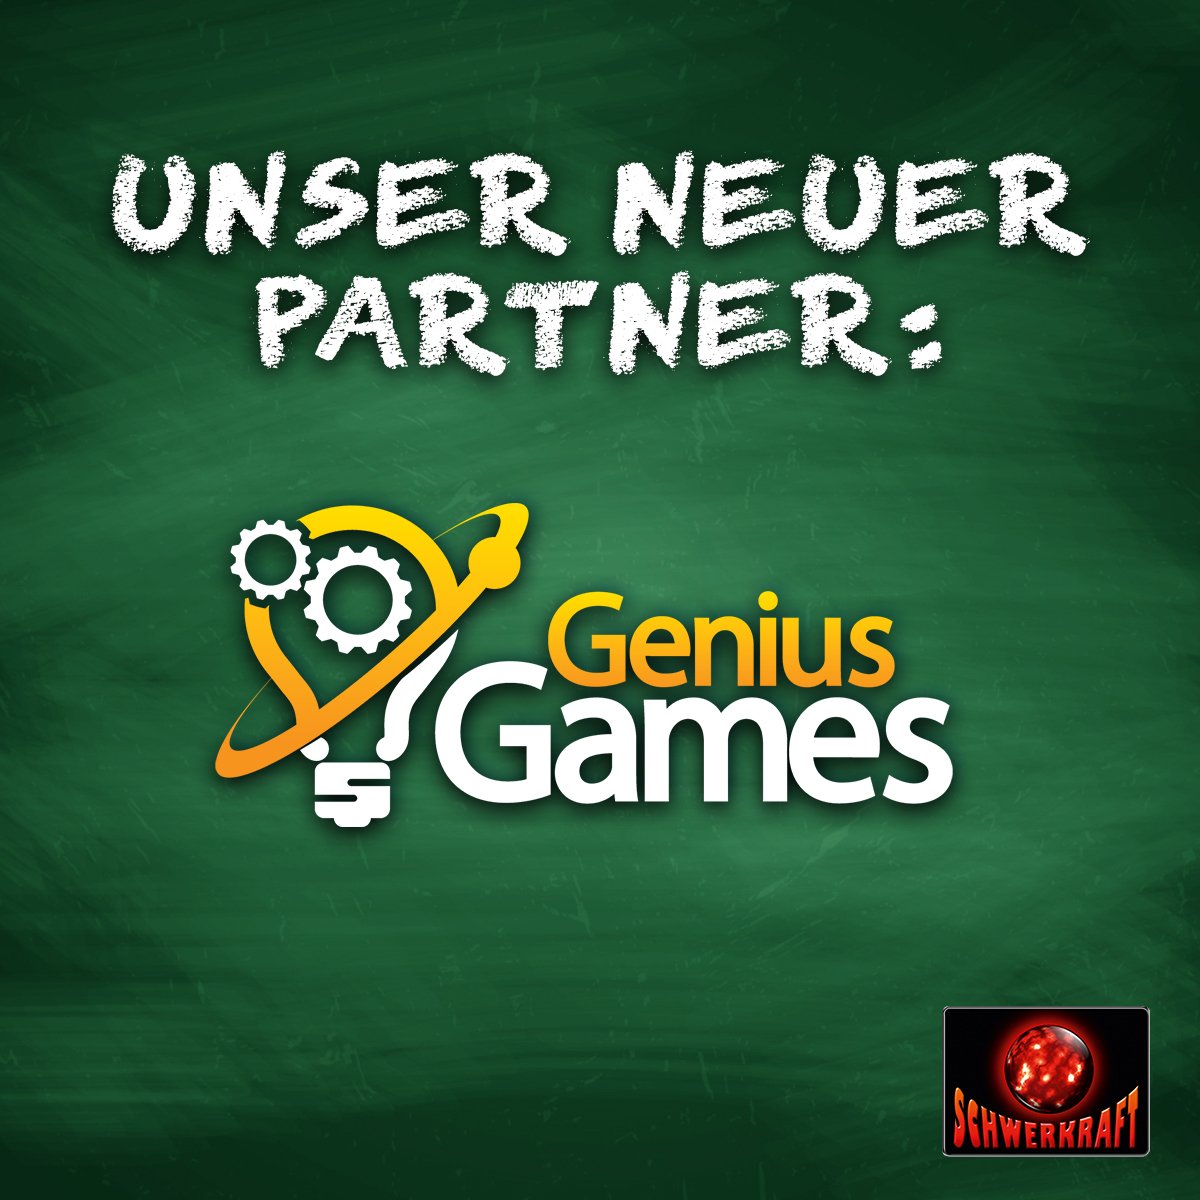 Schwerkraft Verlag verkündet Zusammenarbeit mit Genius Games